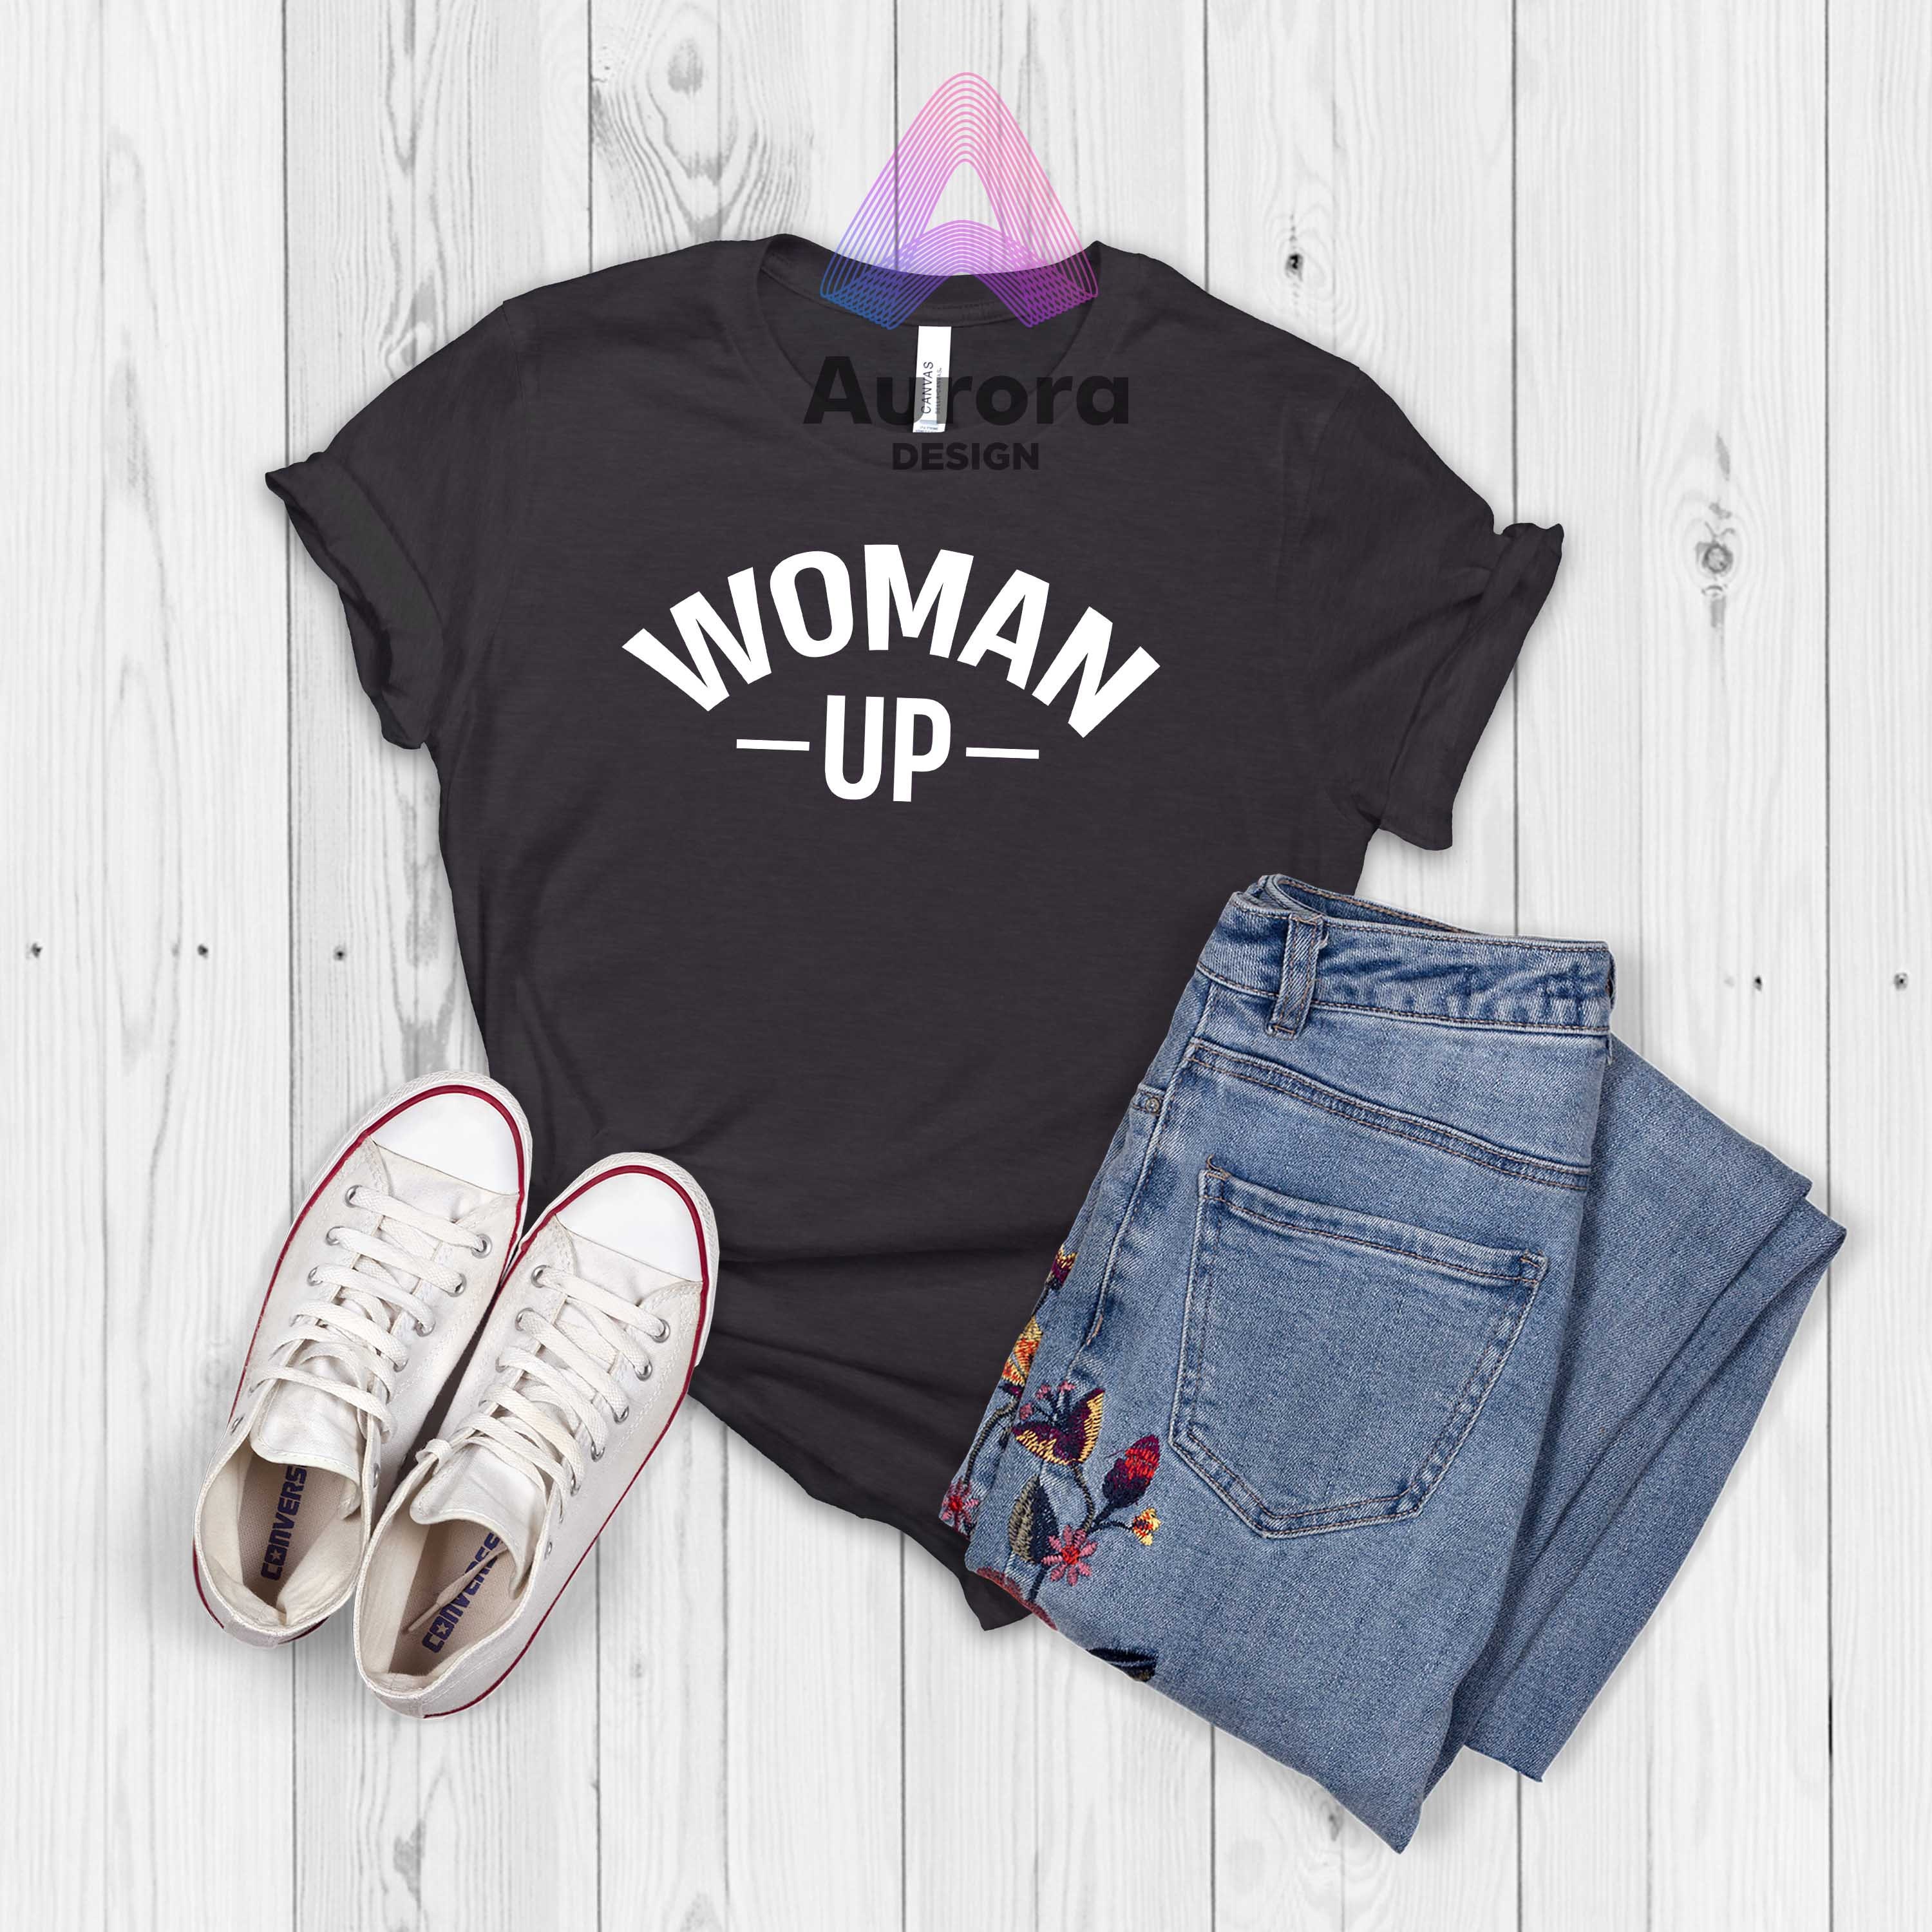 Discover Woman Up T-shirt, Motivational Shirt, Feminism Inspired Tank Tops, Best Summer Top, Women Empower Shirts, Human Rights Awareness Shirts